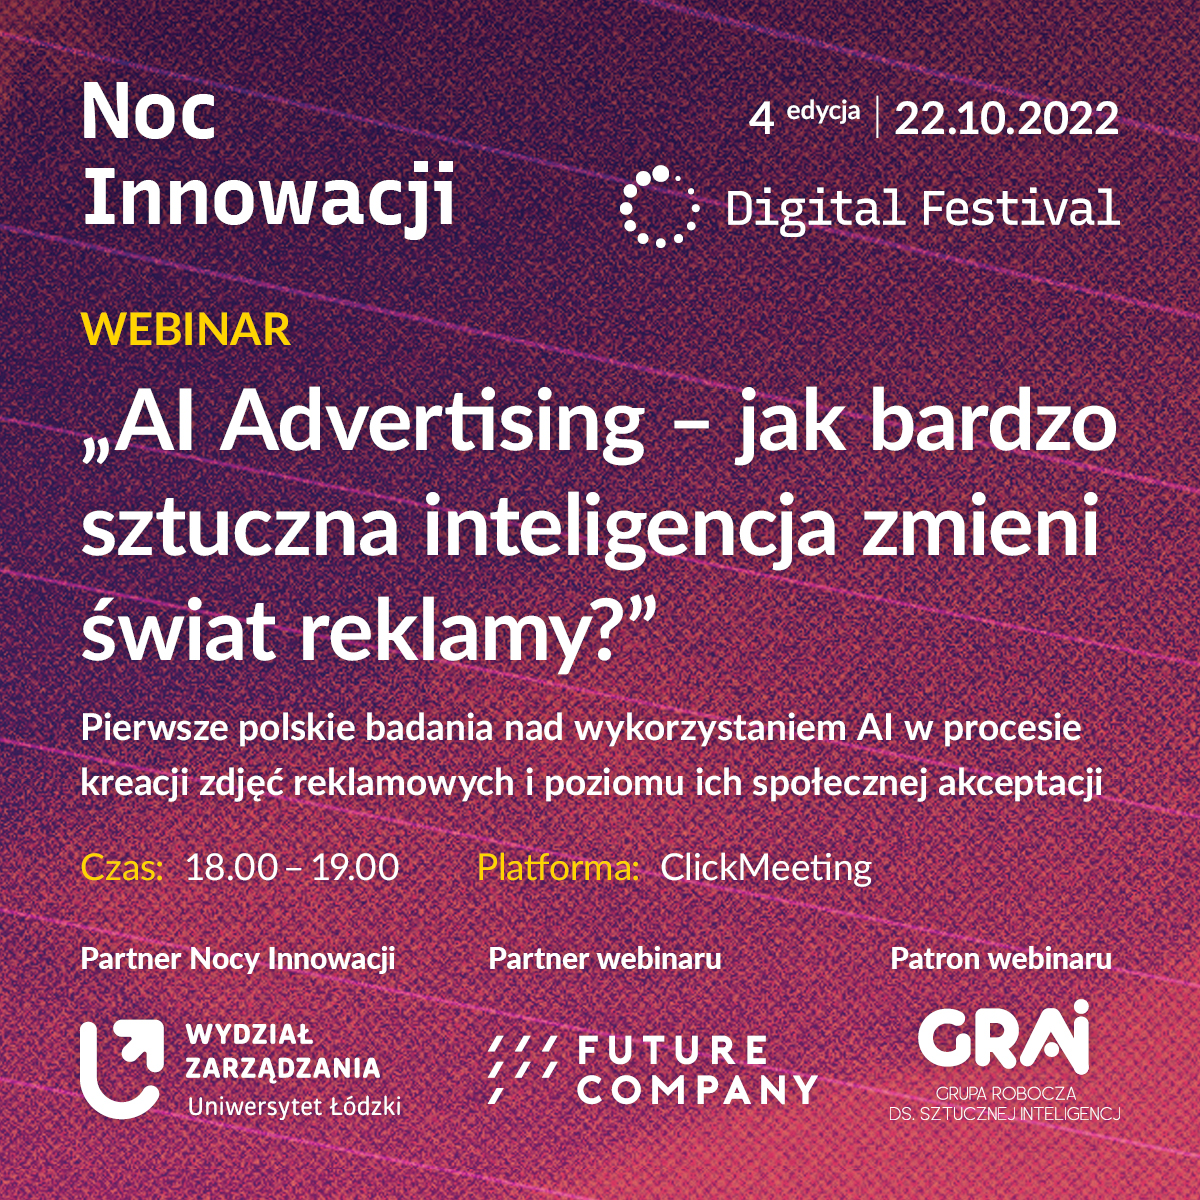 WEBINAR „AI Advertising – jak bardzo sztuczna inteligencja zmieni świat reklamy? Pierwsze polskie badania nad wykorzystaniem AI w procesie kreacji zdjęć reklamowych i poziomu ich społecznej akceptacji”